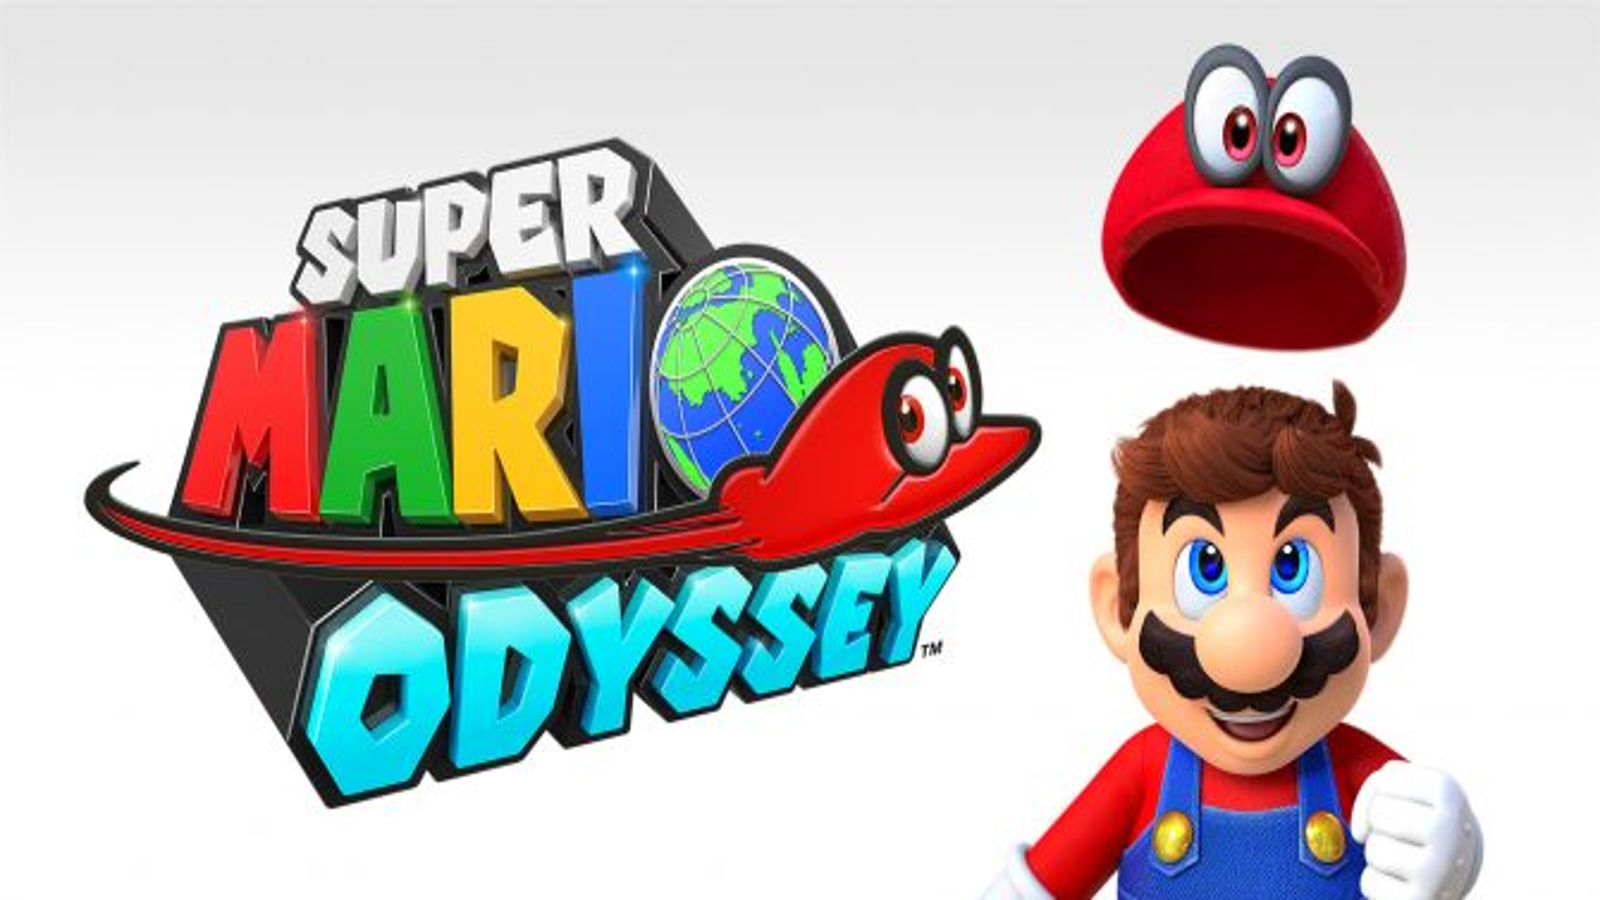 Odyssey será o Super Mario mais super de todos?